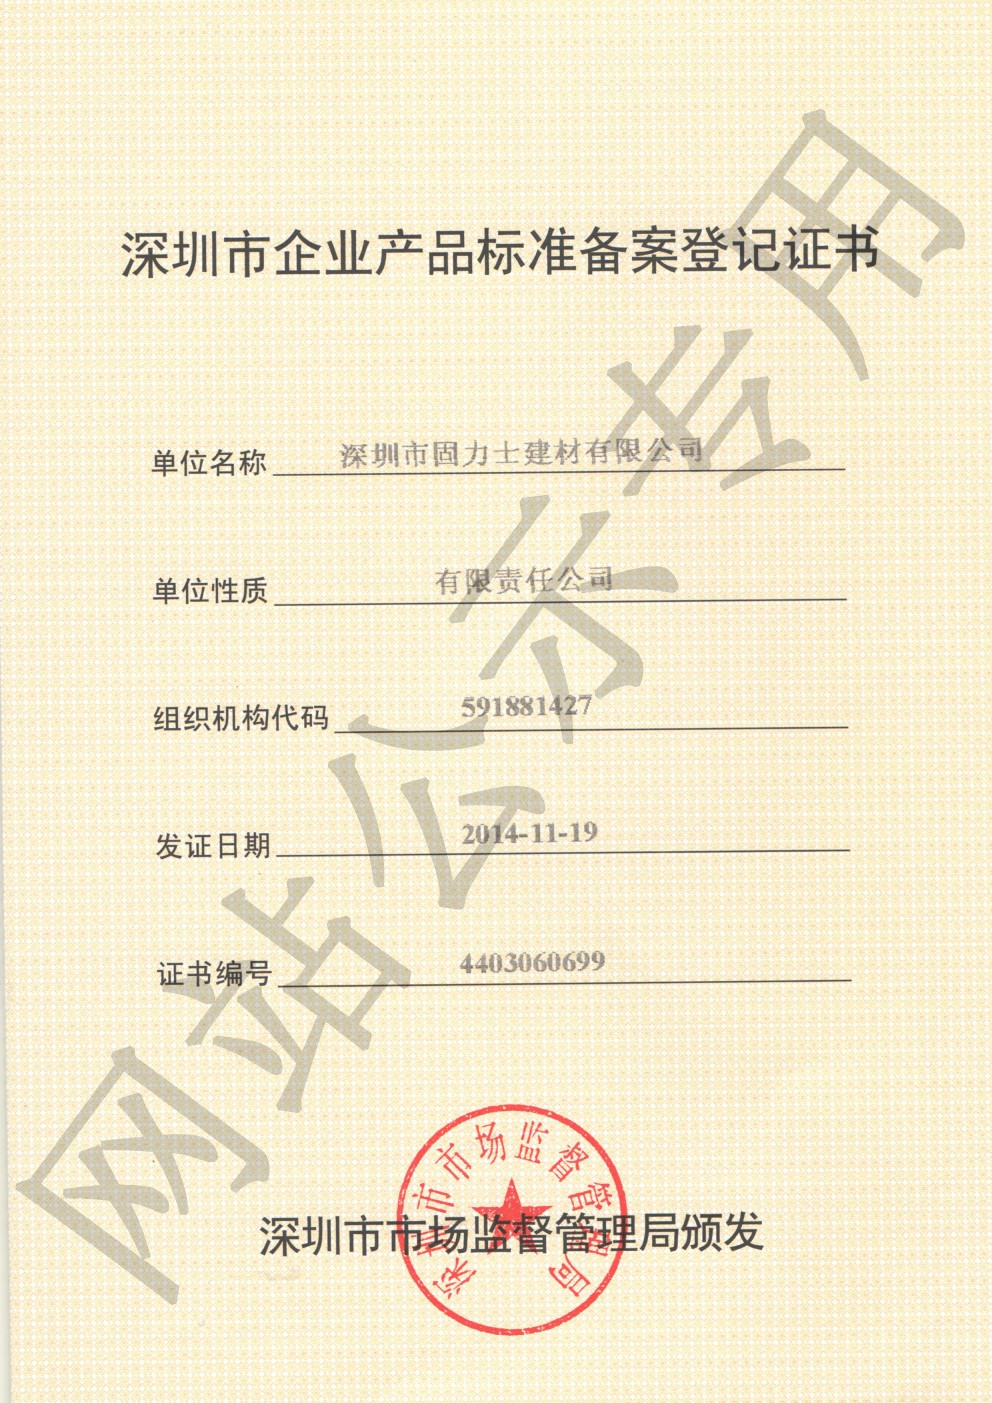 鹿城企业产品标准登记证书